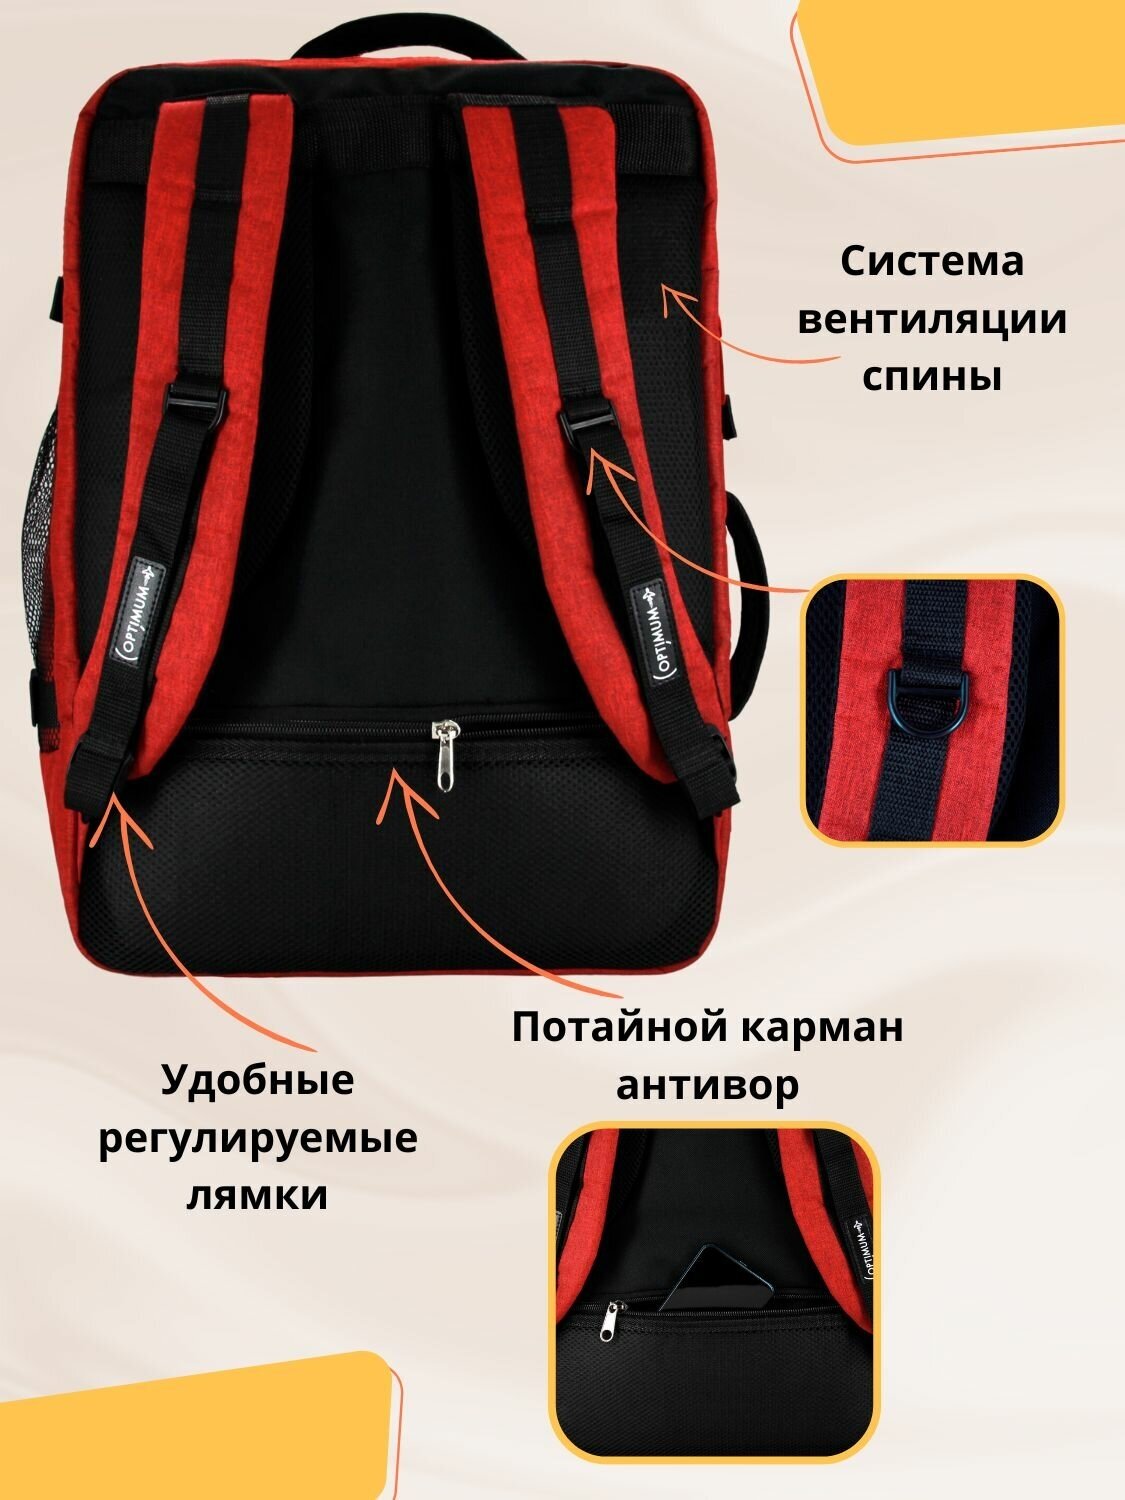 Сумка дорожная сумка-рюкзак Optimum, 44 л, 55х40х20 см, ручная кладь, отделение для ноутбука, фиксирующие ремни, водонепроницаемая, красный - фотография № 3